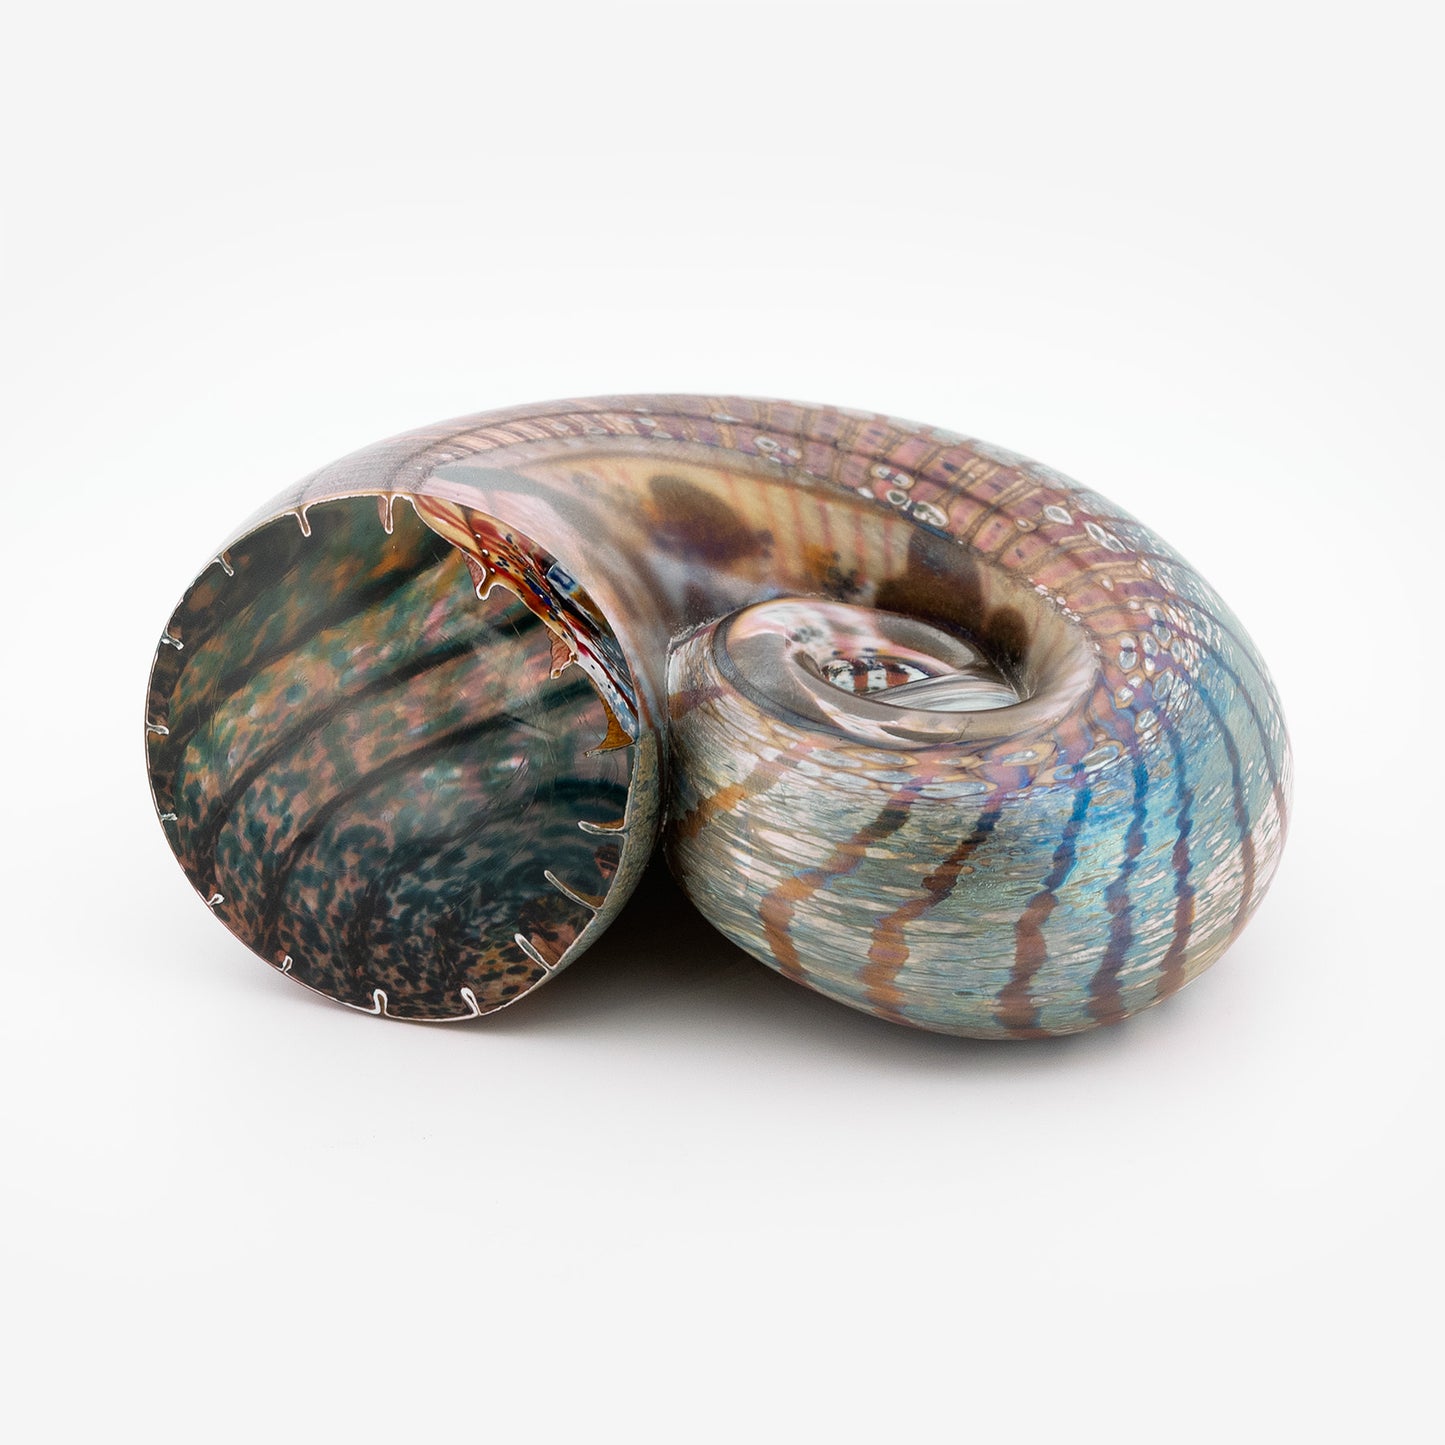 Iridised Ammonite Shells